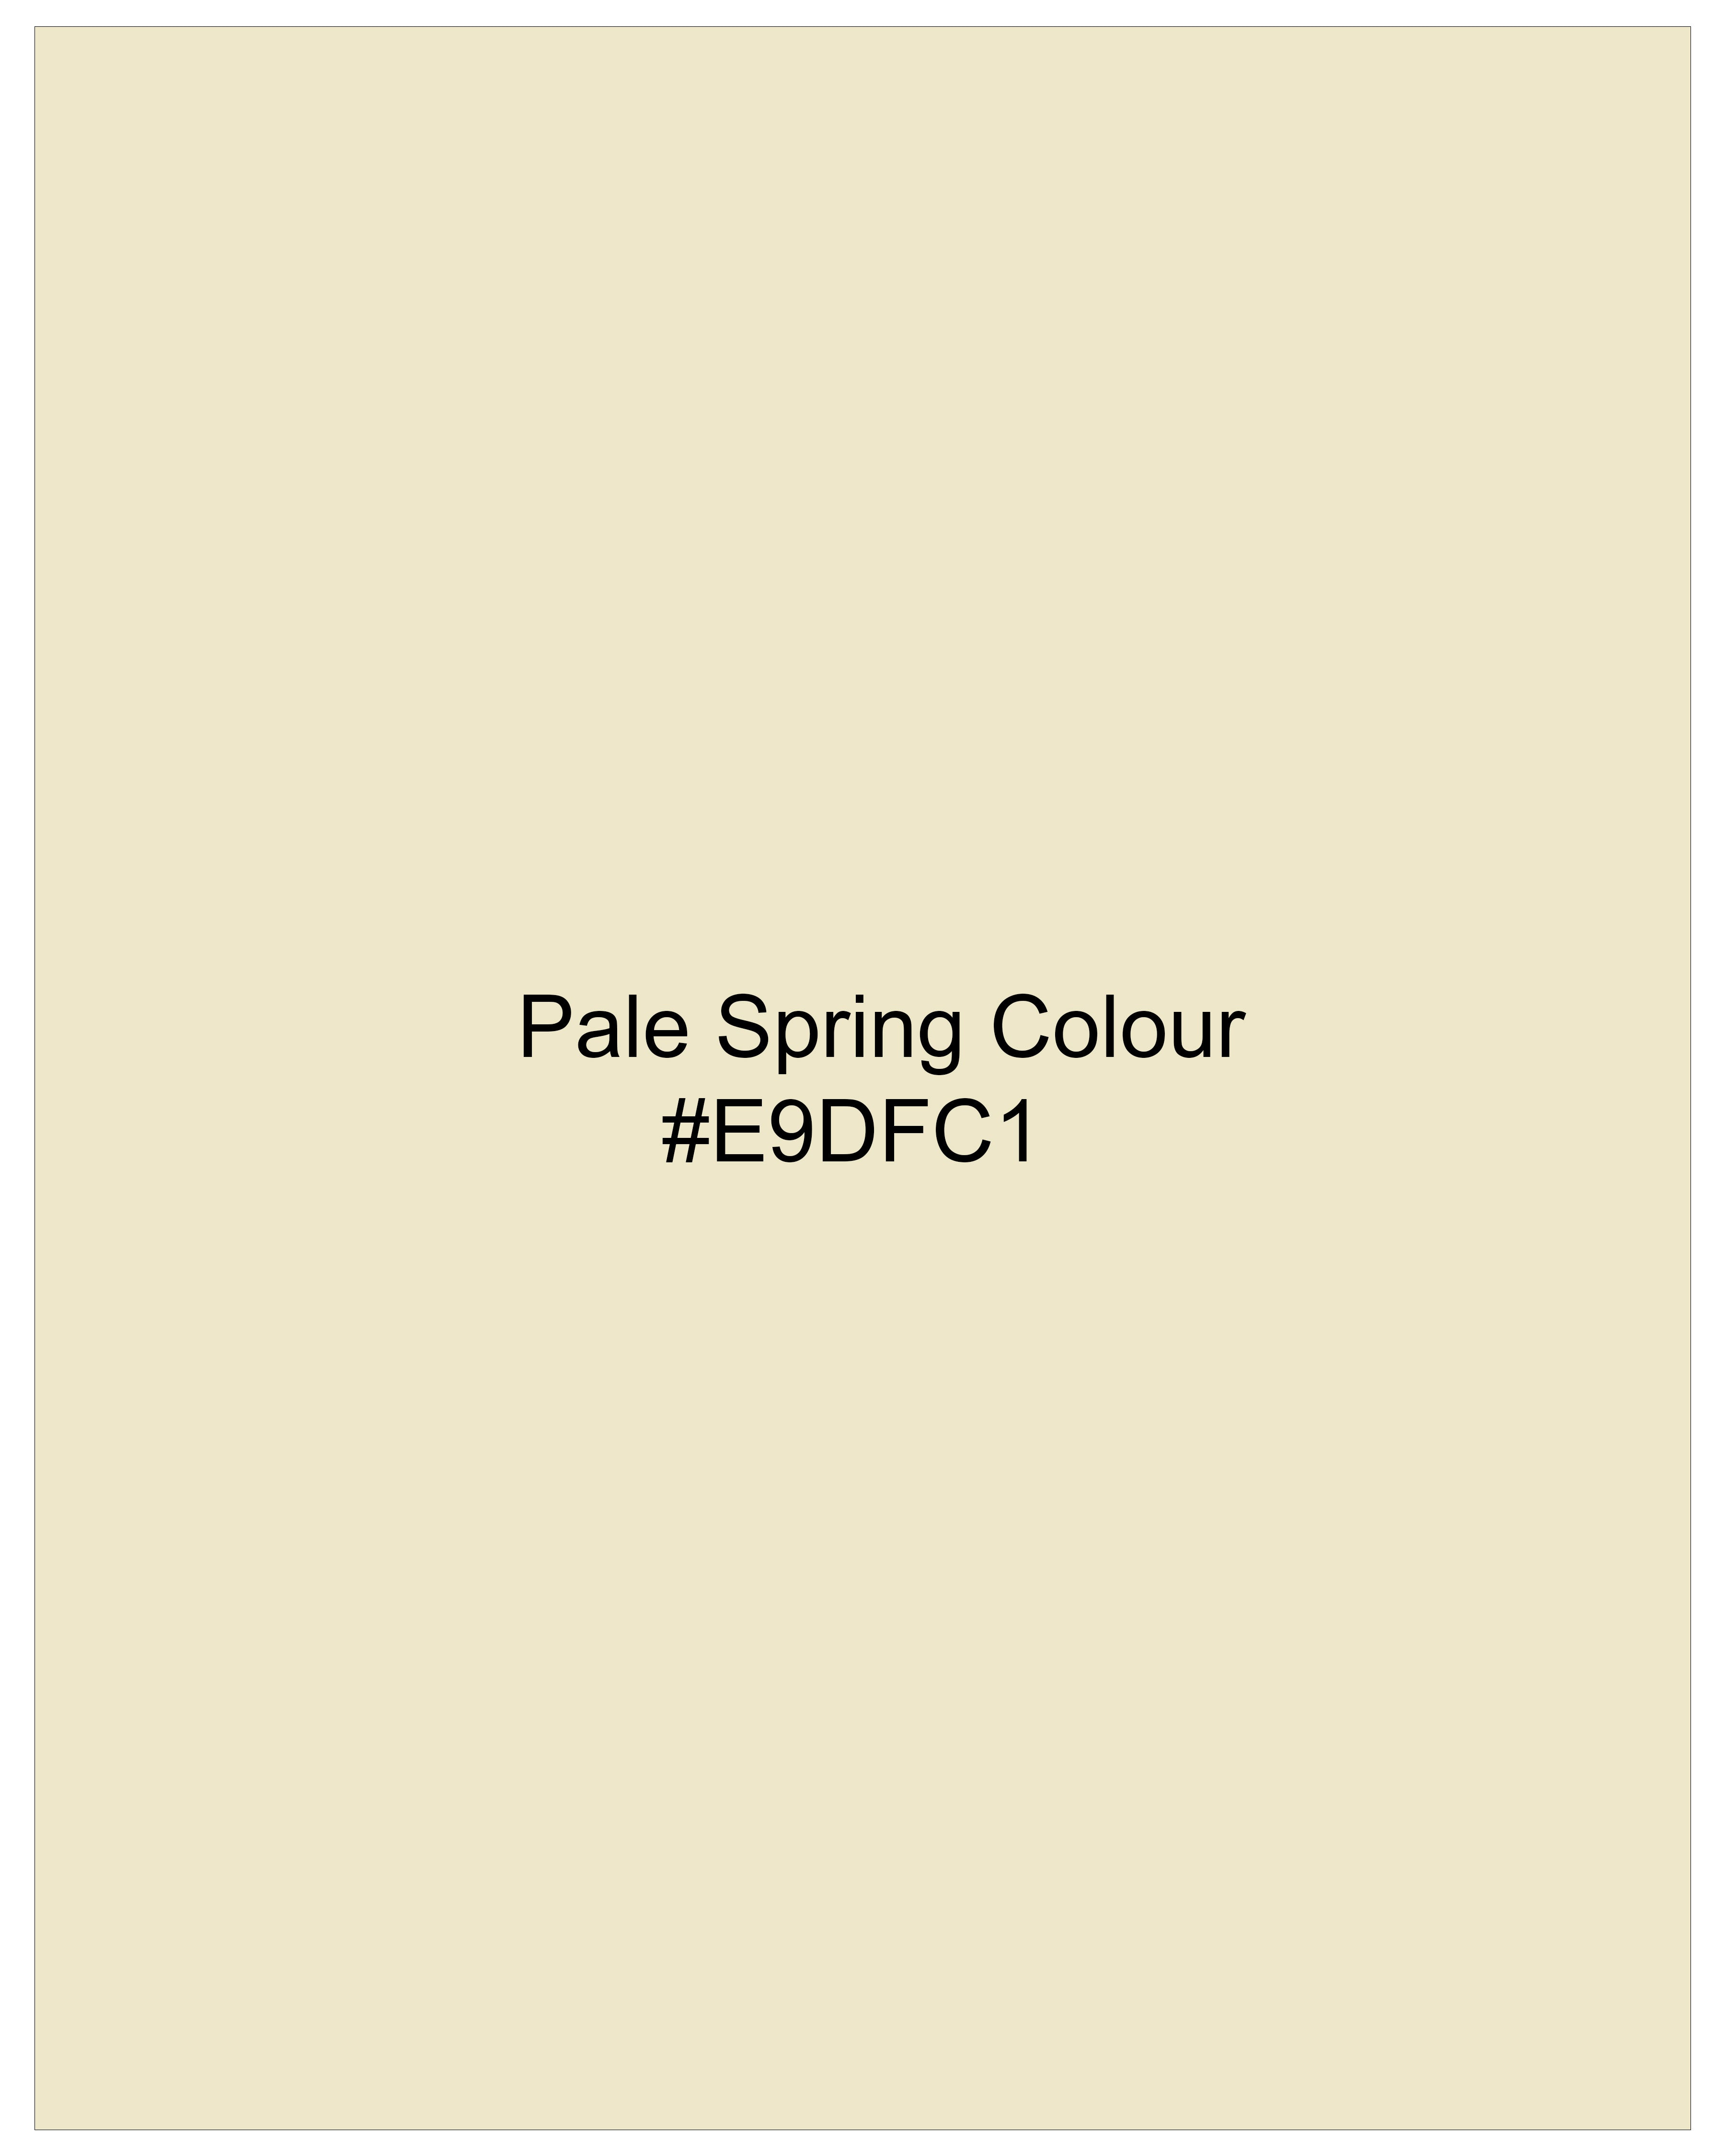 Pale Spring Cream Waistcoat V2694-36, V2694-38, V2694-40, V2694-42, V2694-44, V2694-46, V2694-48, V2694-50, V2694-52, V2694-54, V2694-56, V2694-58, V2694-60